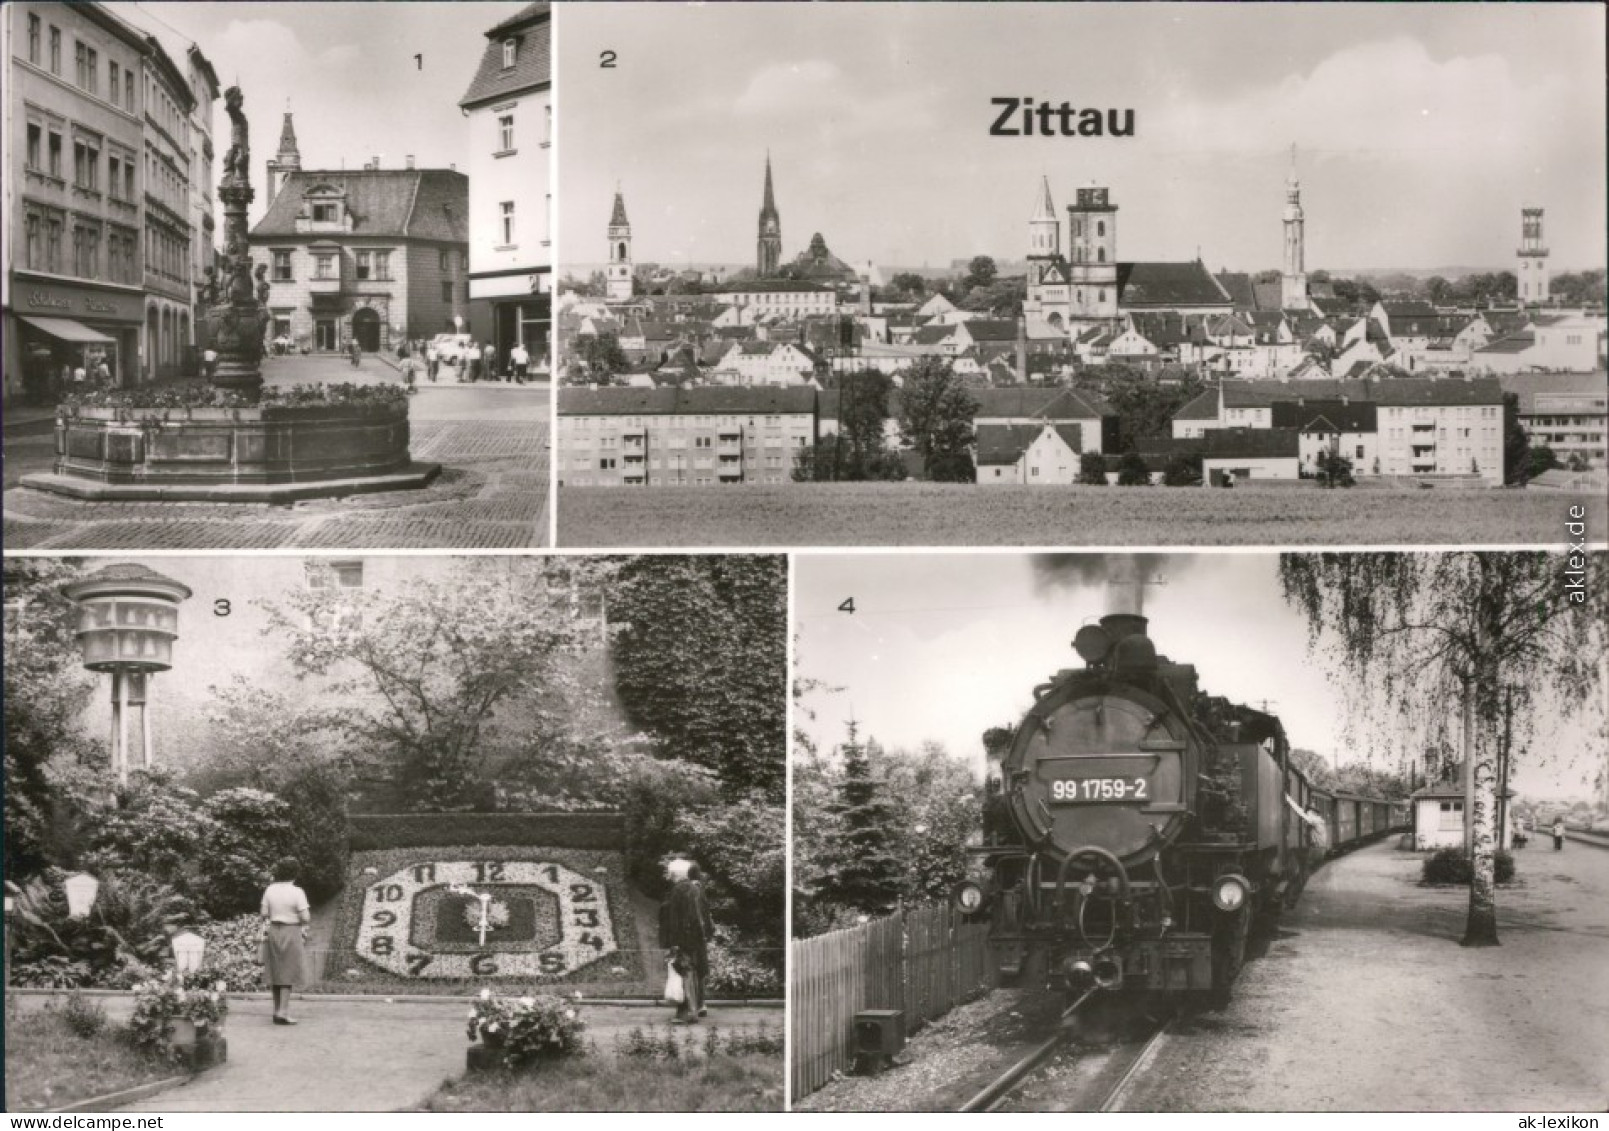 Zittau Rolandbrunnen,  Blumenuhr, Meißner Porzellanglockenspiel, Kleinbahn 1982 - Zittau